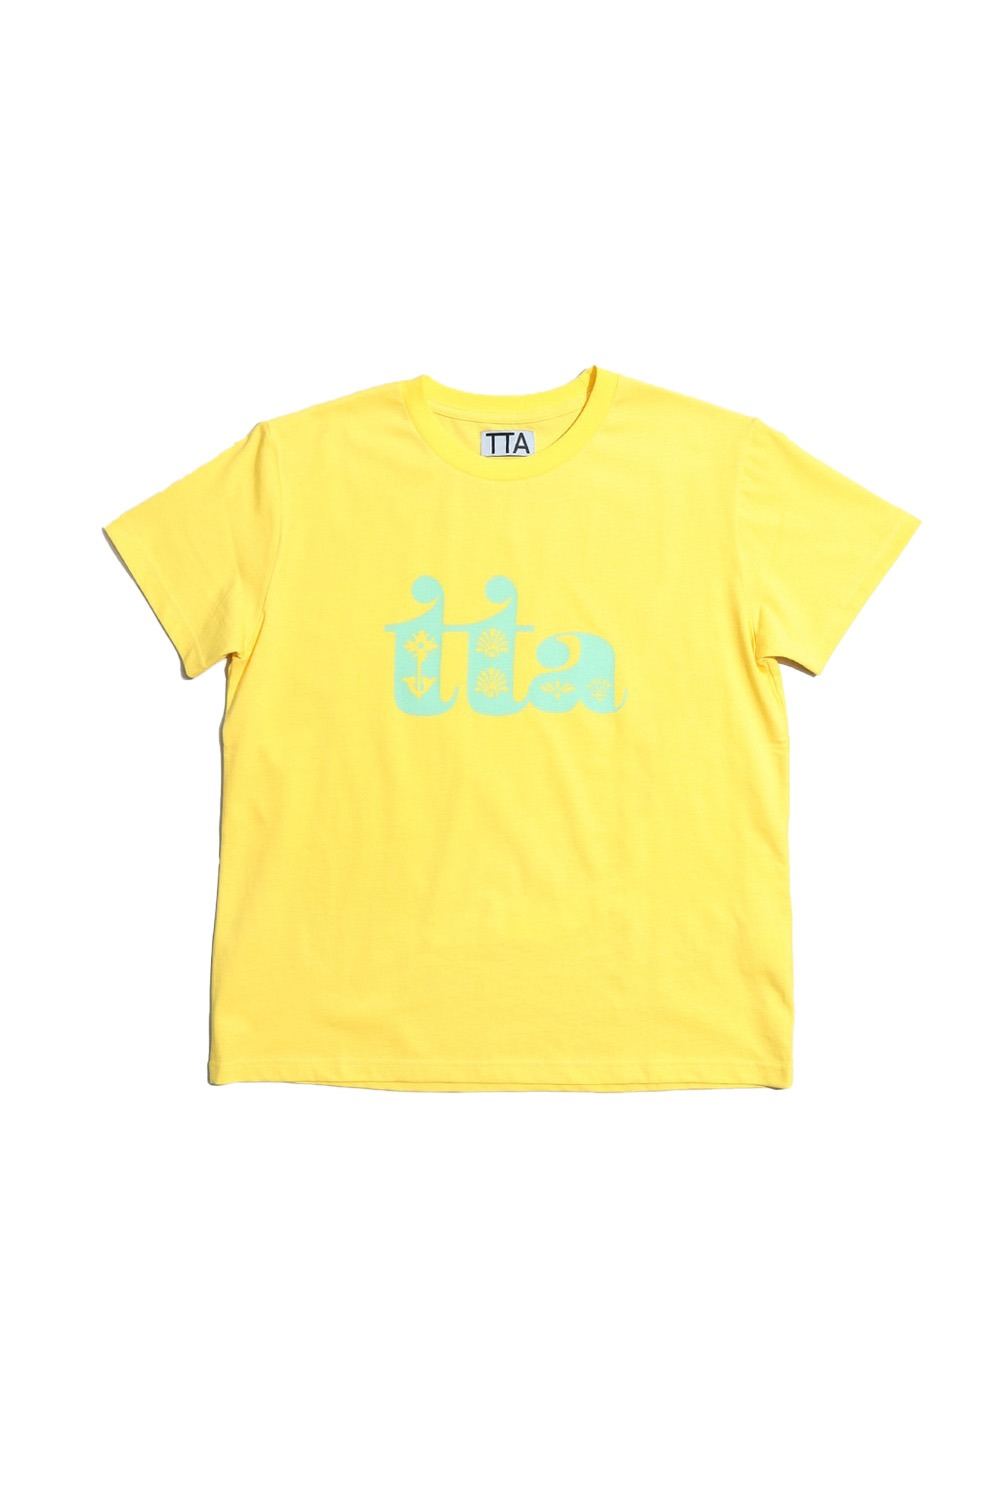 TTA 가든 S/S 티셔츠 (바나나) - 리치즈 RICHEZ